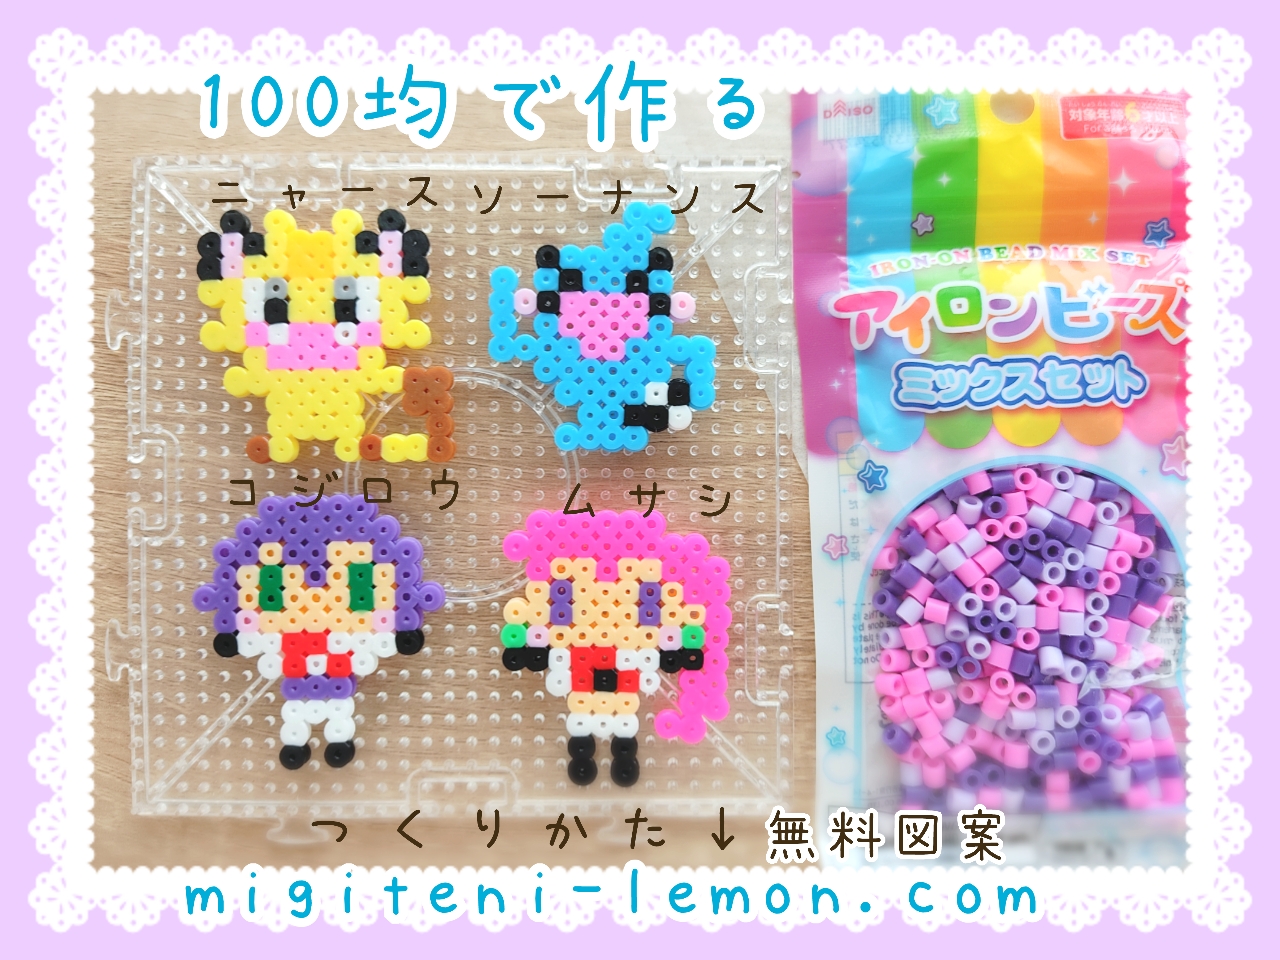 musashi-kojiro-nyasu-meowth-sonansu-wobbuffet-rocket-pokemon-beads-zuan